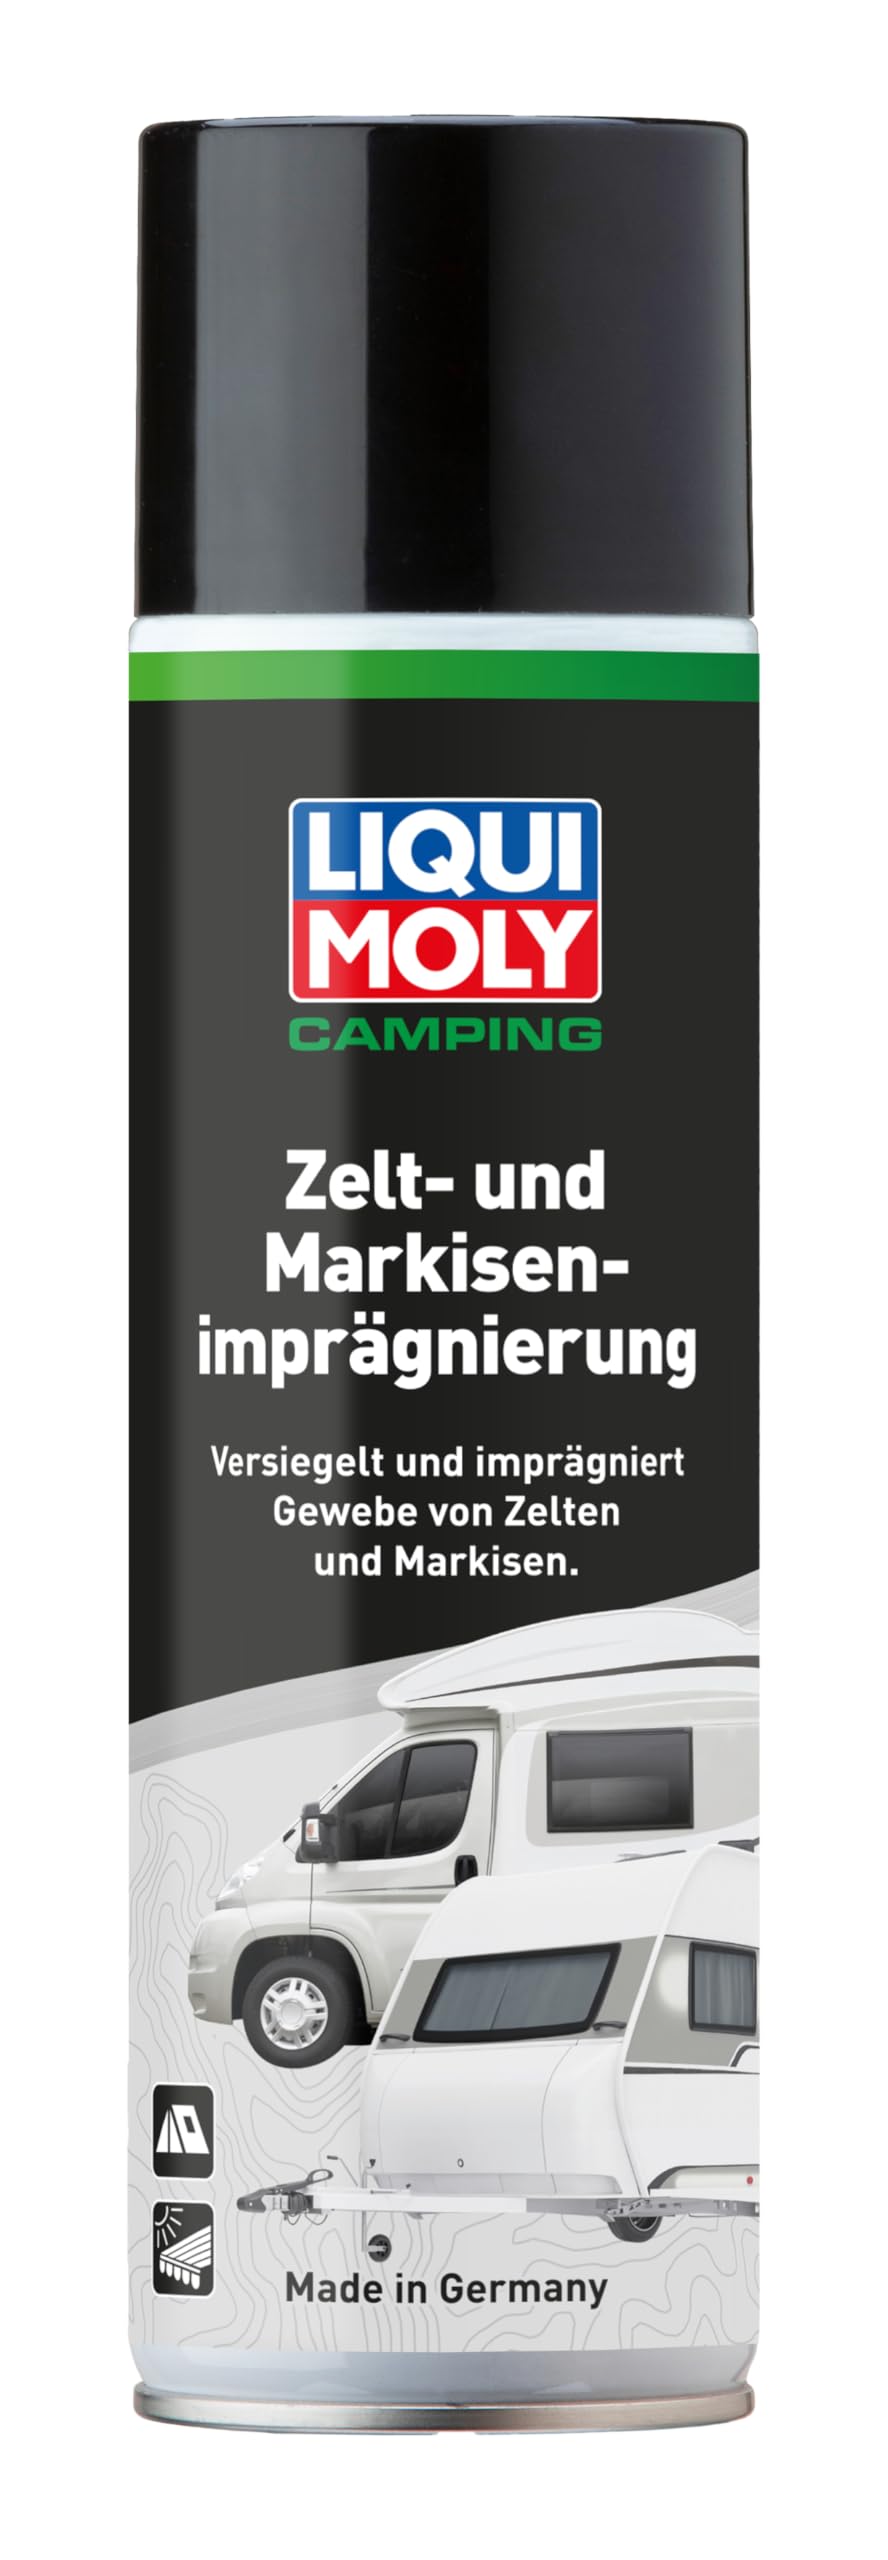 LIQUI MOLY Camping Zelt- und Markisenimprägnierung | 500 ml | Reinigung/Pflege/Wartung | Art.-Nr.: 21815 von Liqui Moly